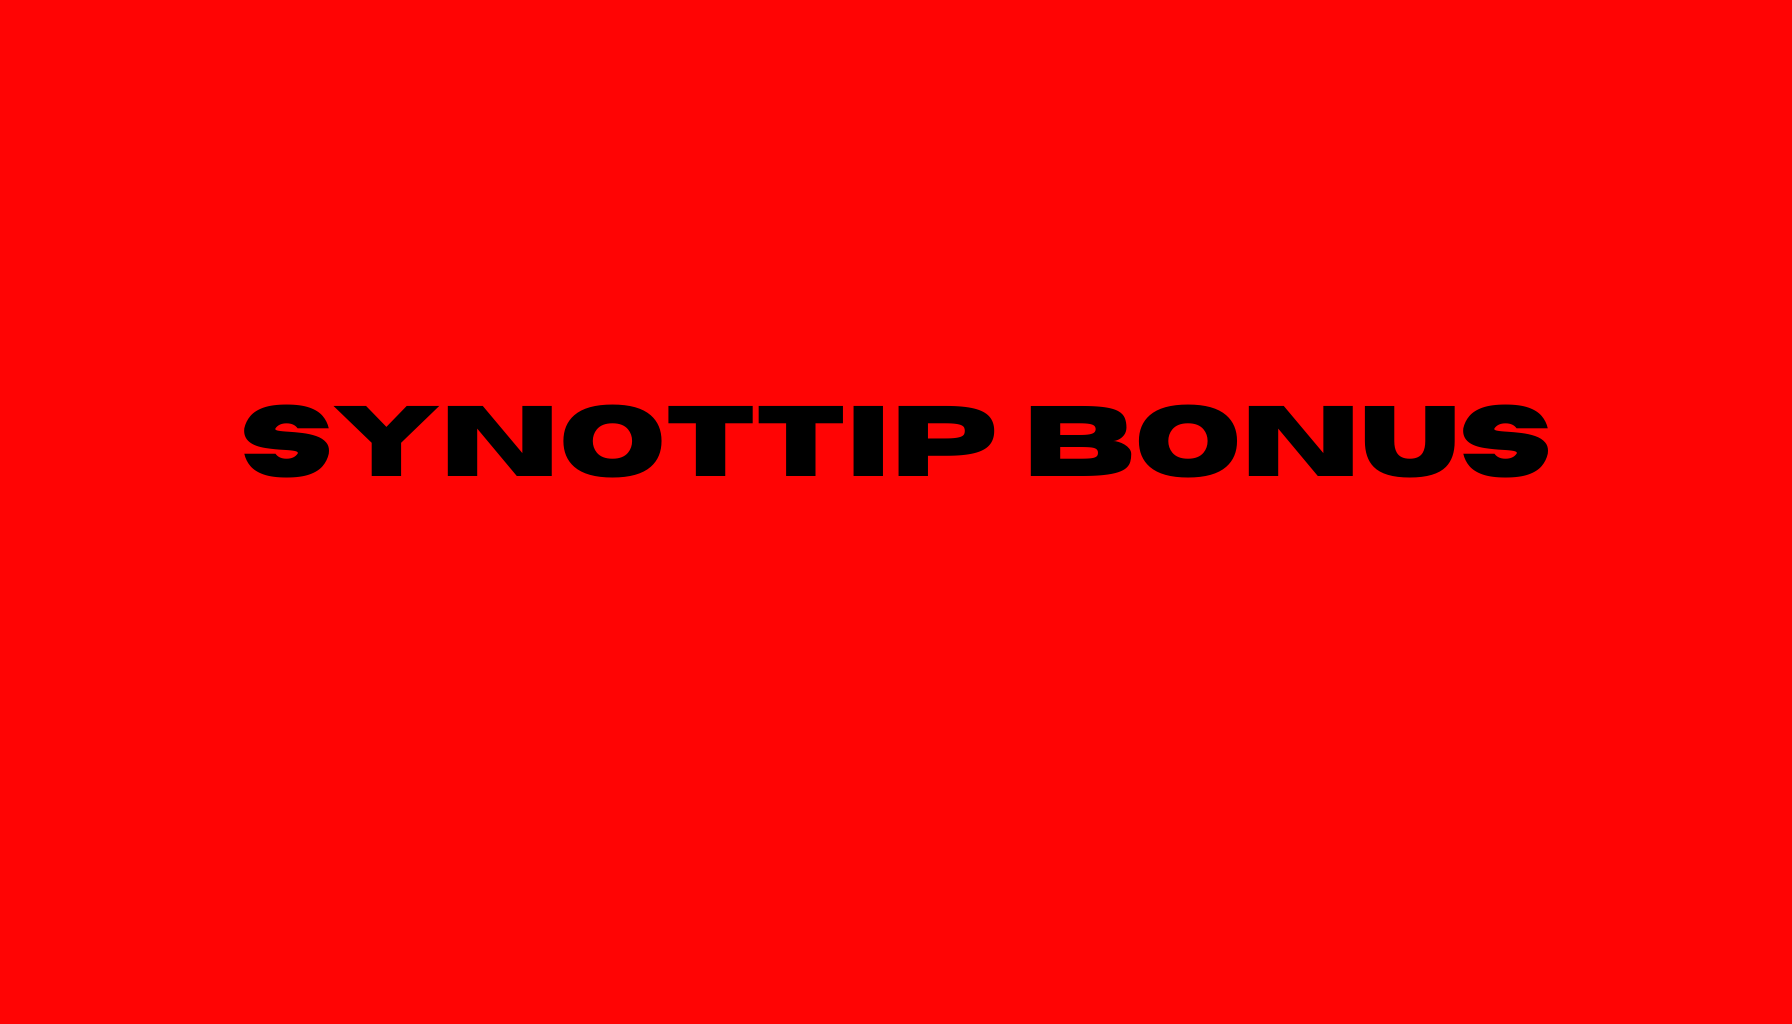 Synottip bonus za registráciu.